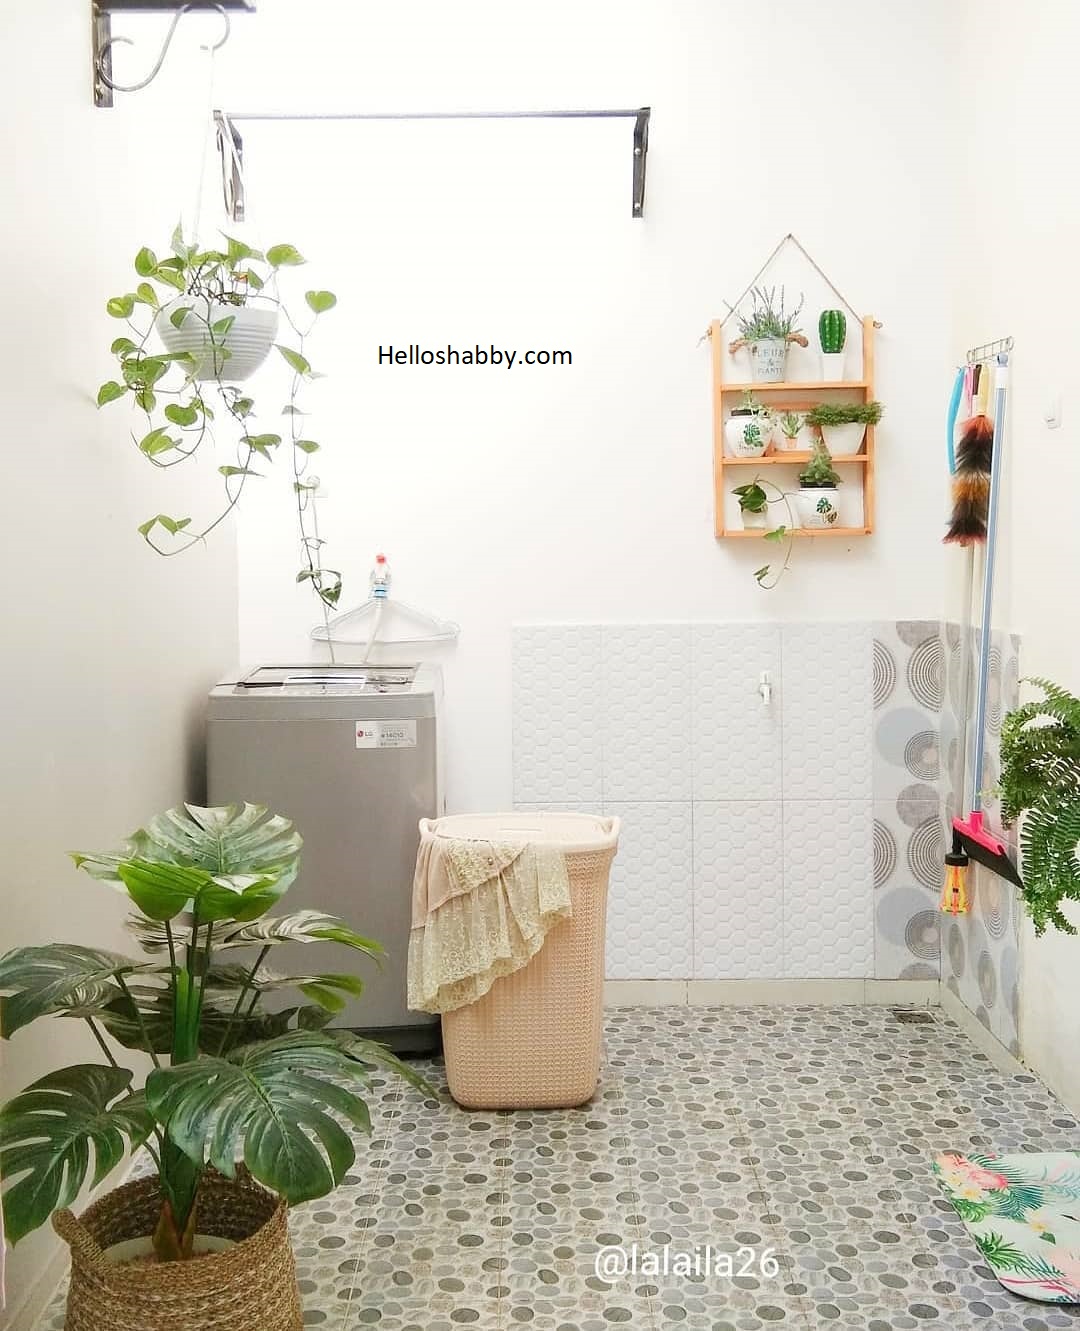 7 Desain Ruang Cuci Dan Jemur Baju Di Belakang Rumah HelloShabbycom Interior And Exterior Solutions